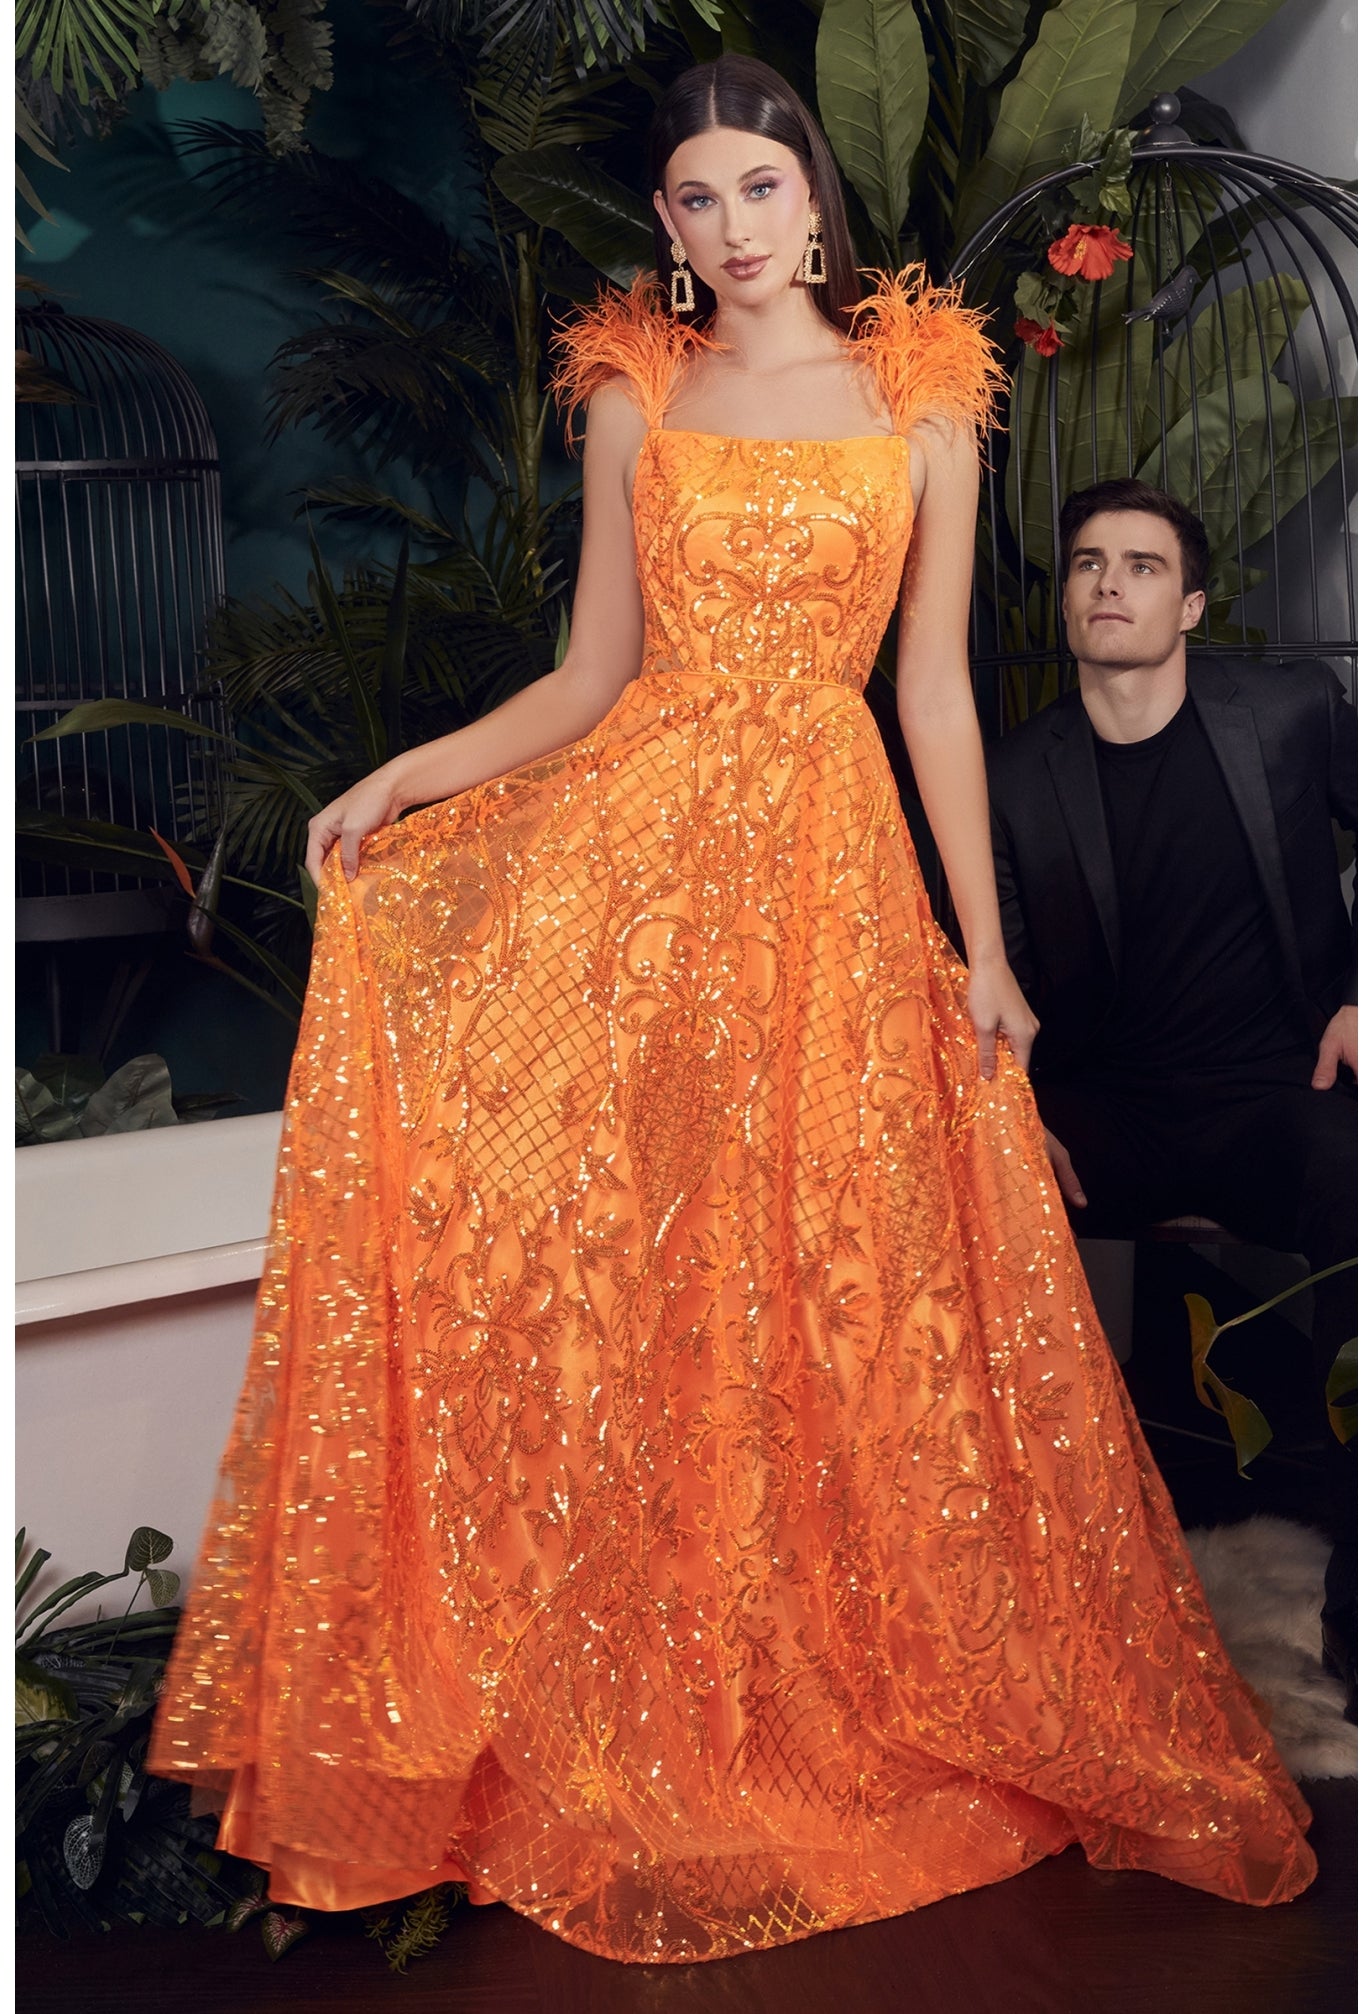 orange dress